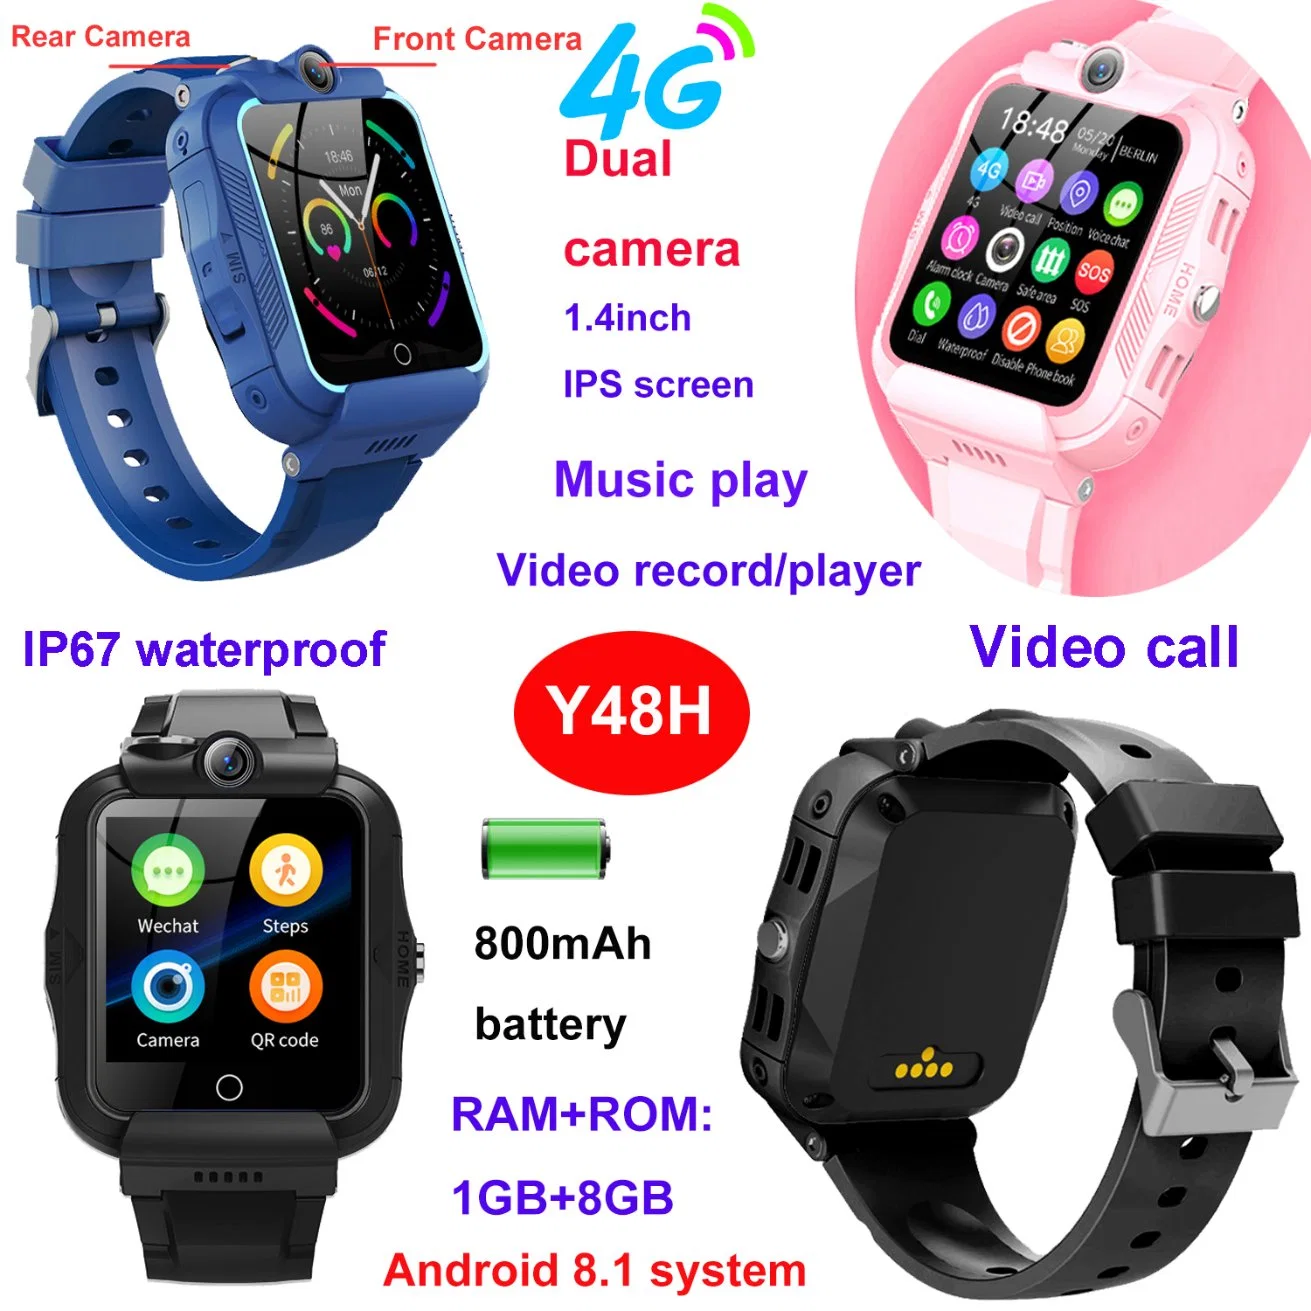 Teléfono Móvil 4G Seguridad niños GPS Smart Tracker Watch Teléfono para niños niñas con cámara dual Video Call Y48H